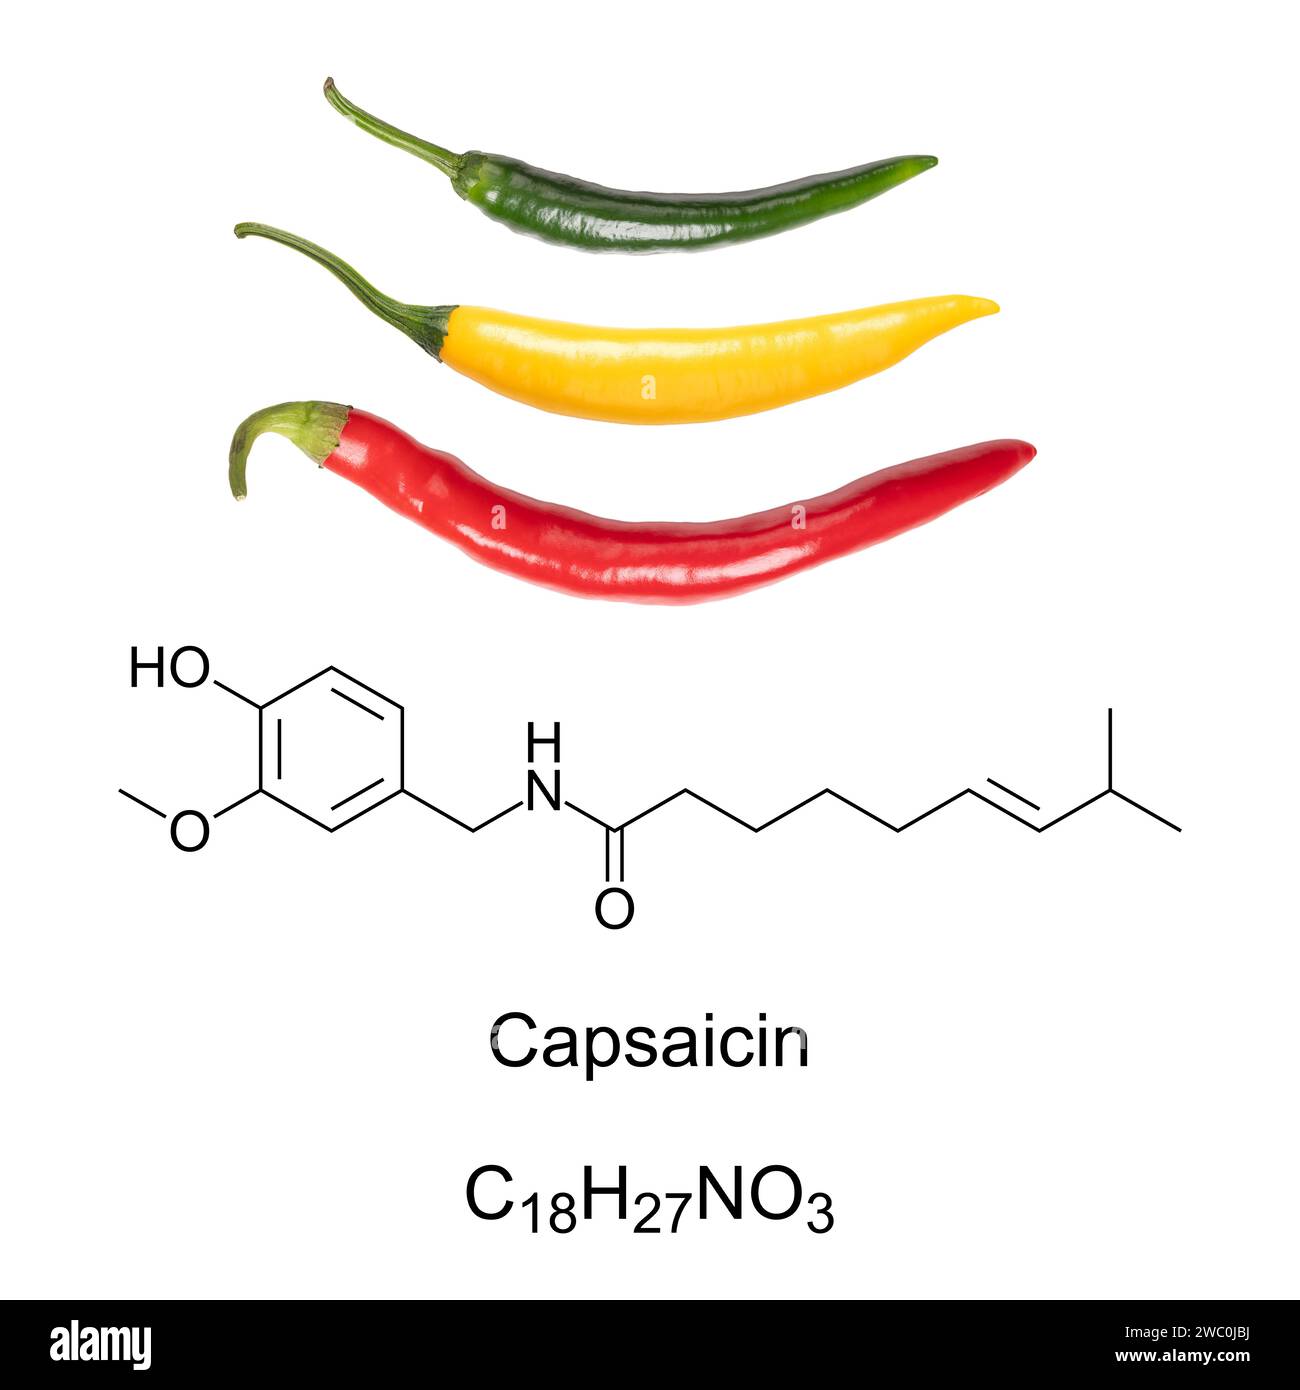 Peperoncino di Cayenne, formula chimica e struttura della capsaicina. La capsaicina è il componente attivo e irritante chimico nei peperoncini. Foto Stock